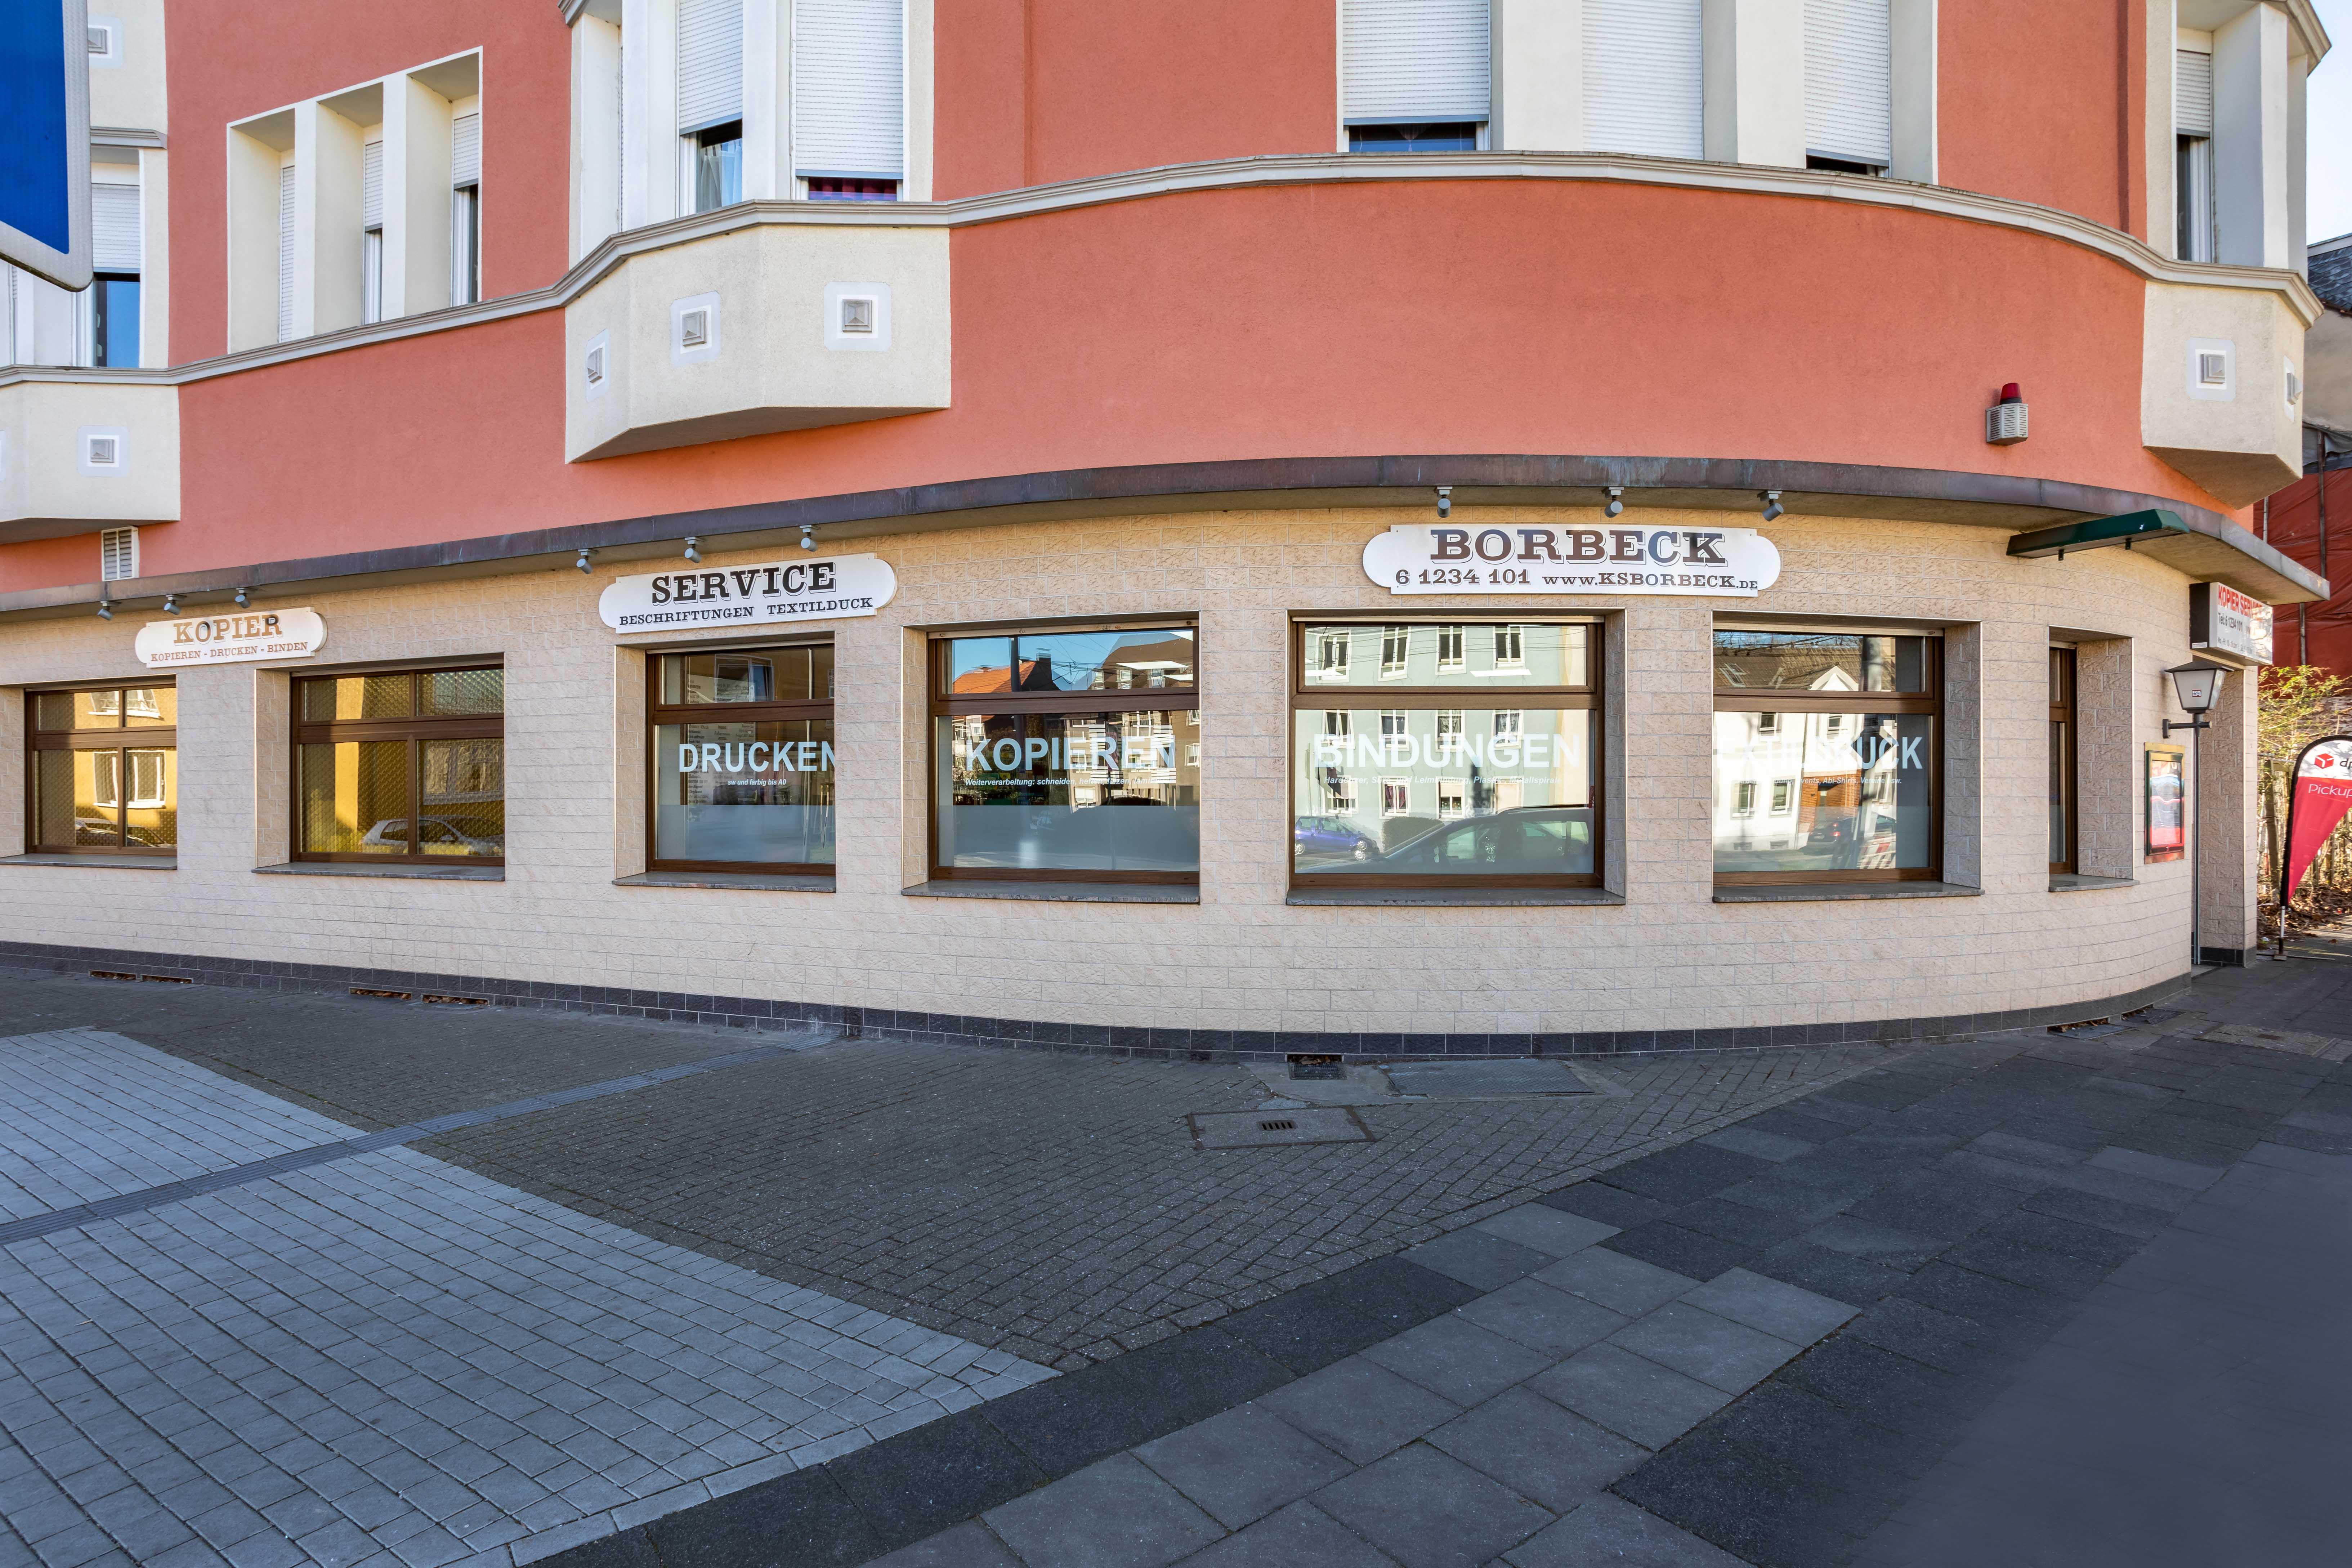 Bilder Kopier-Service-Borbeck Essen